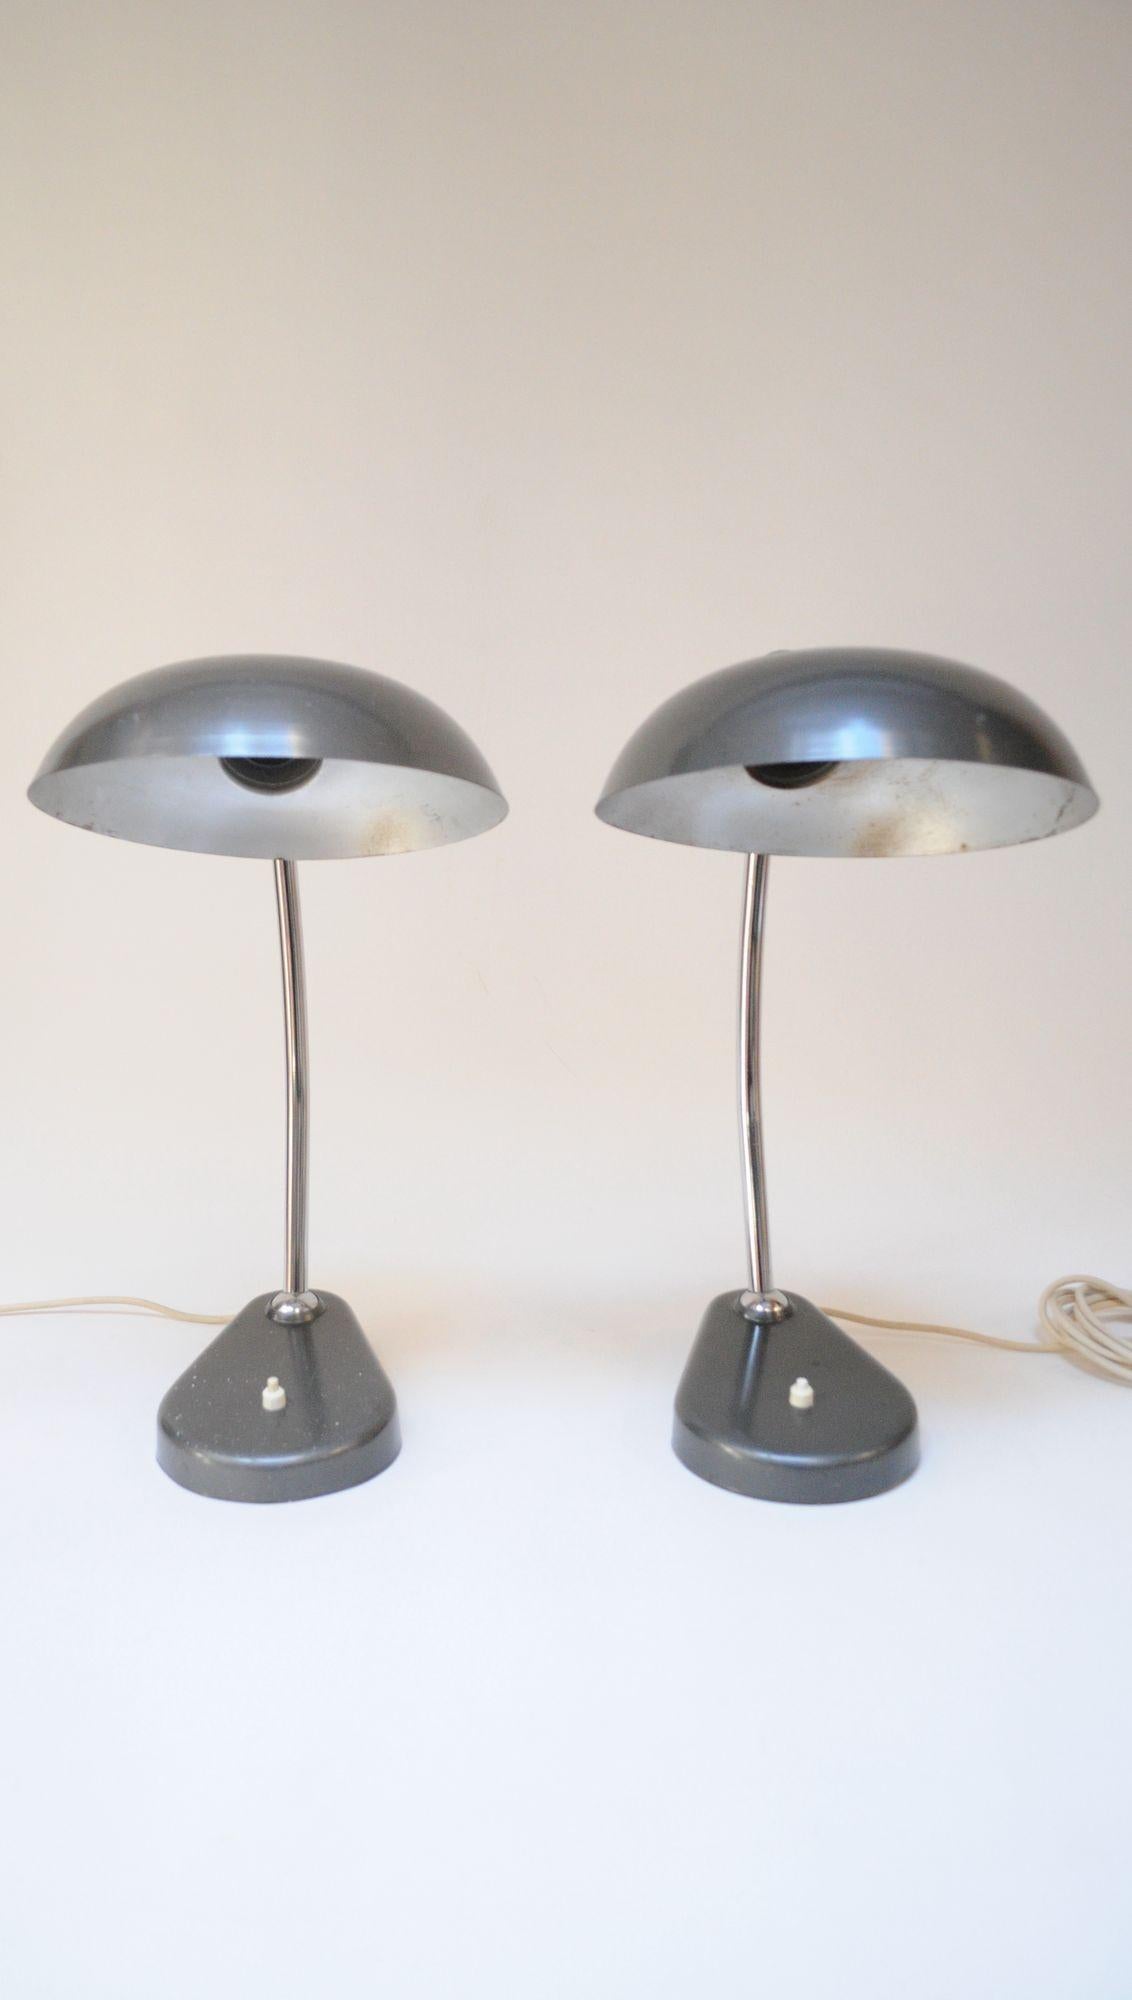 Pair of Vintage Italian Modern Industrial Chromed-Metal Task Lamps by Seminara For Sale 15